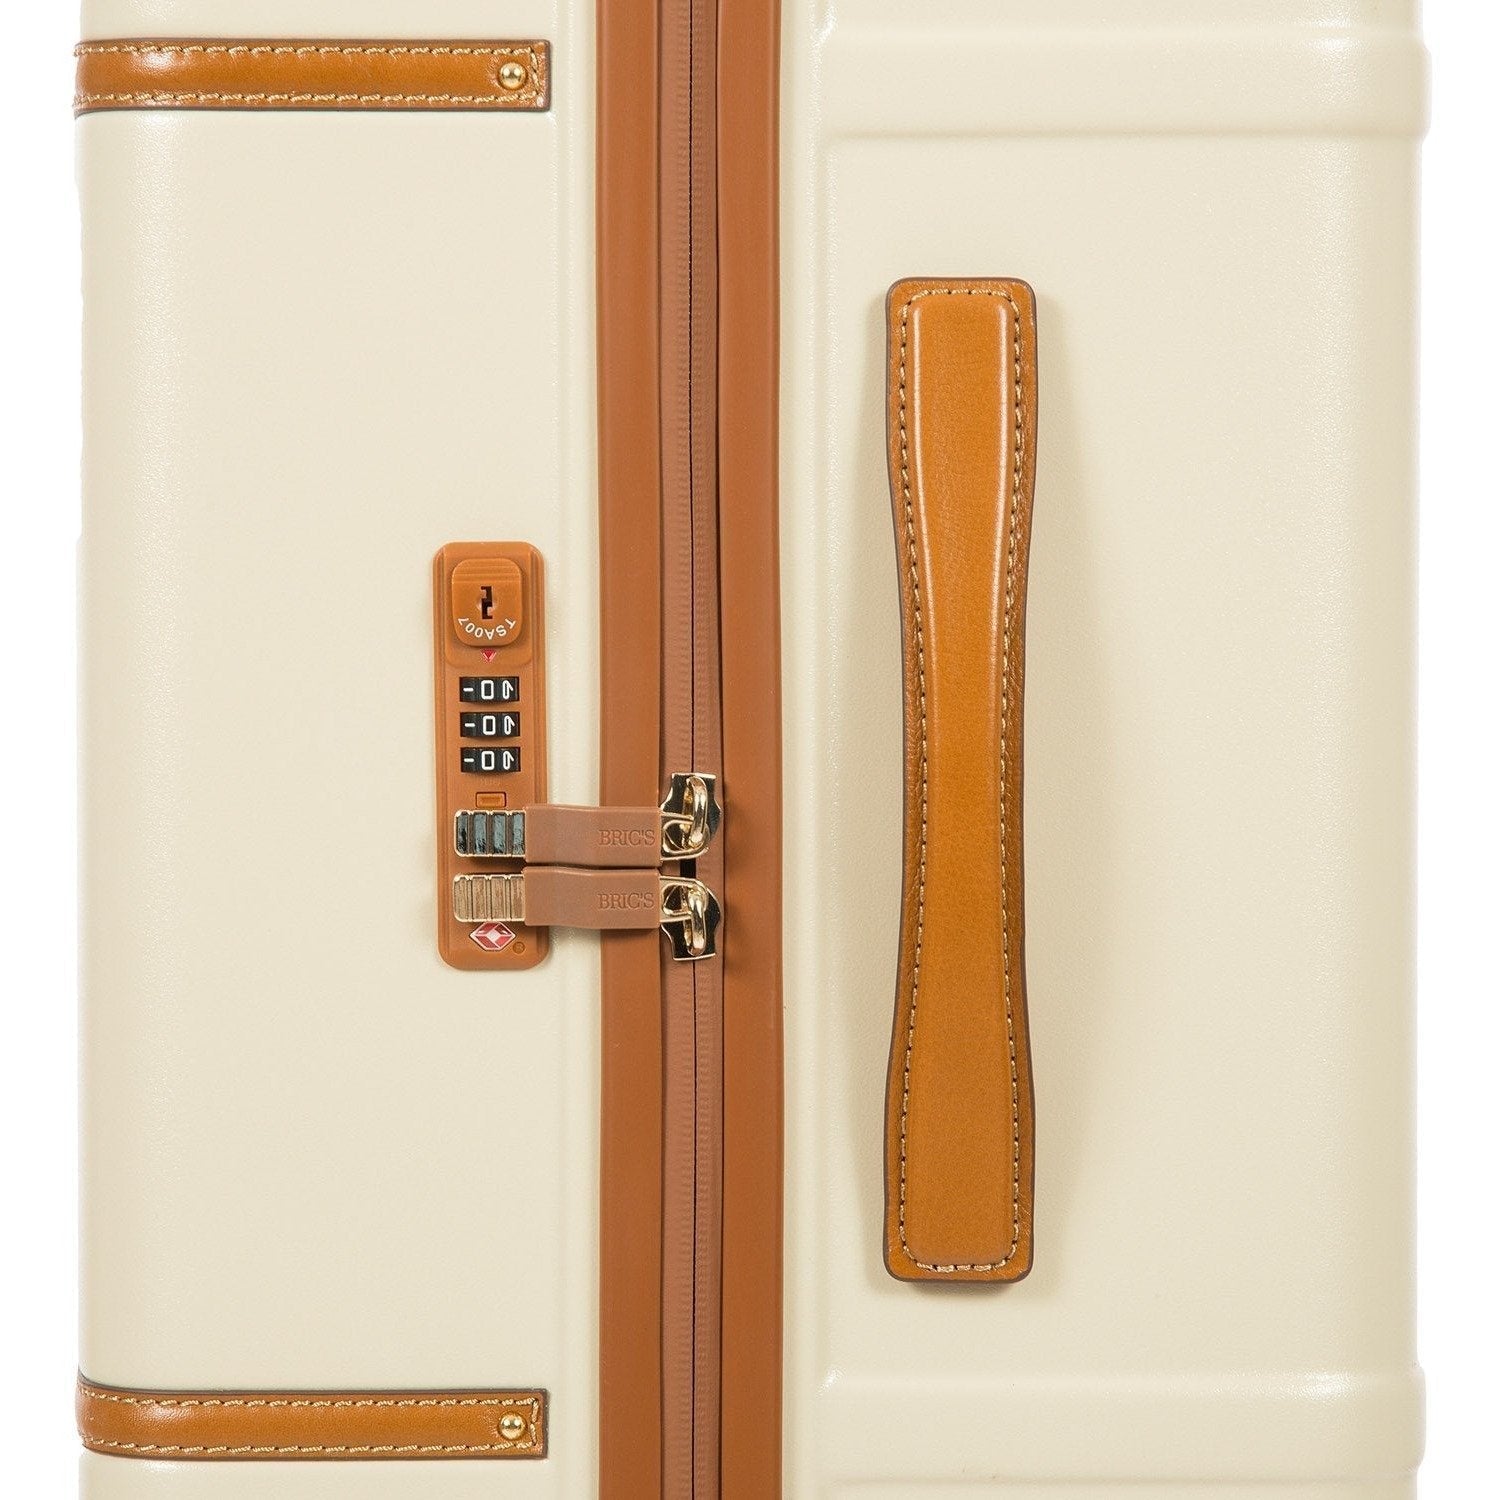 Gio 76cm Spinner Trunk | Cream-Suitcases